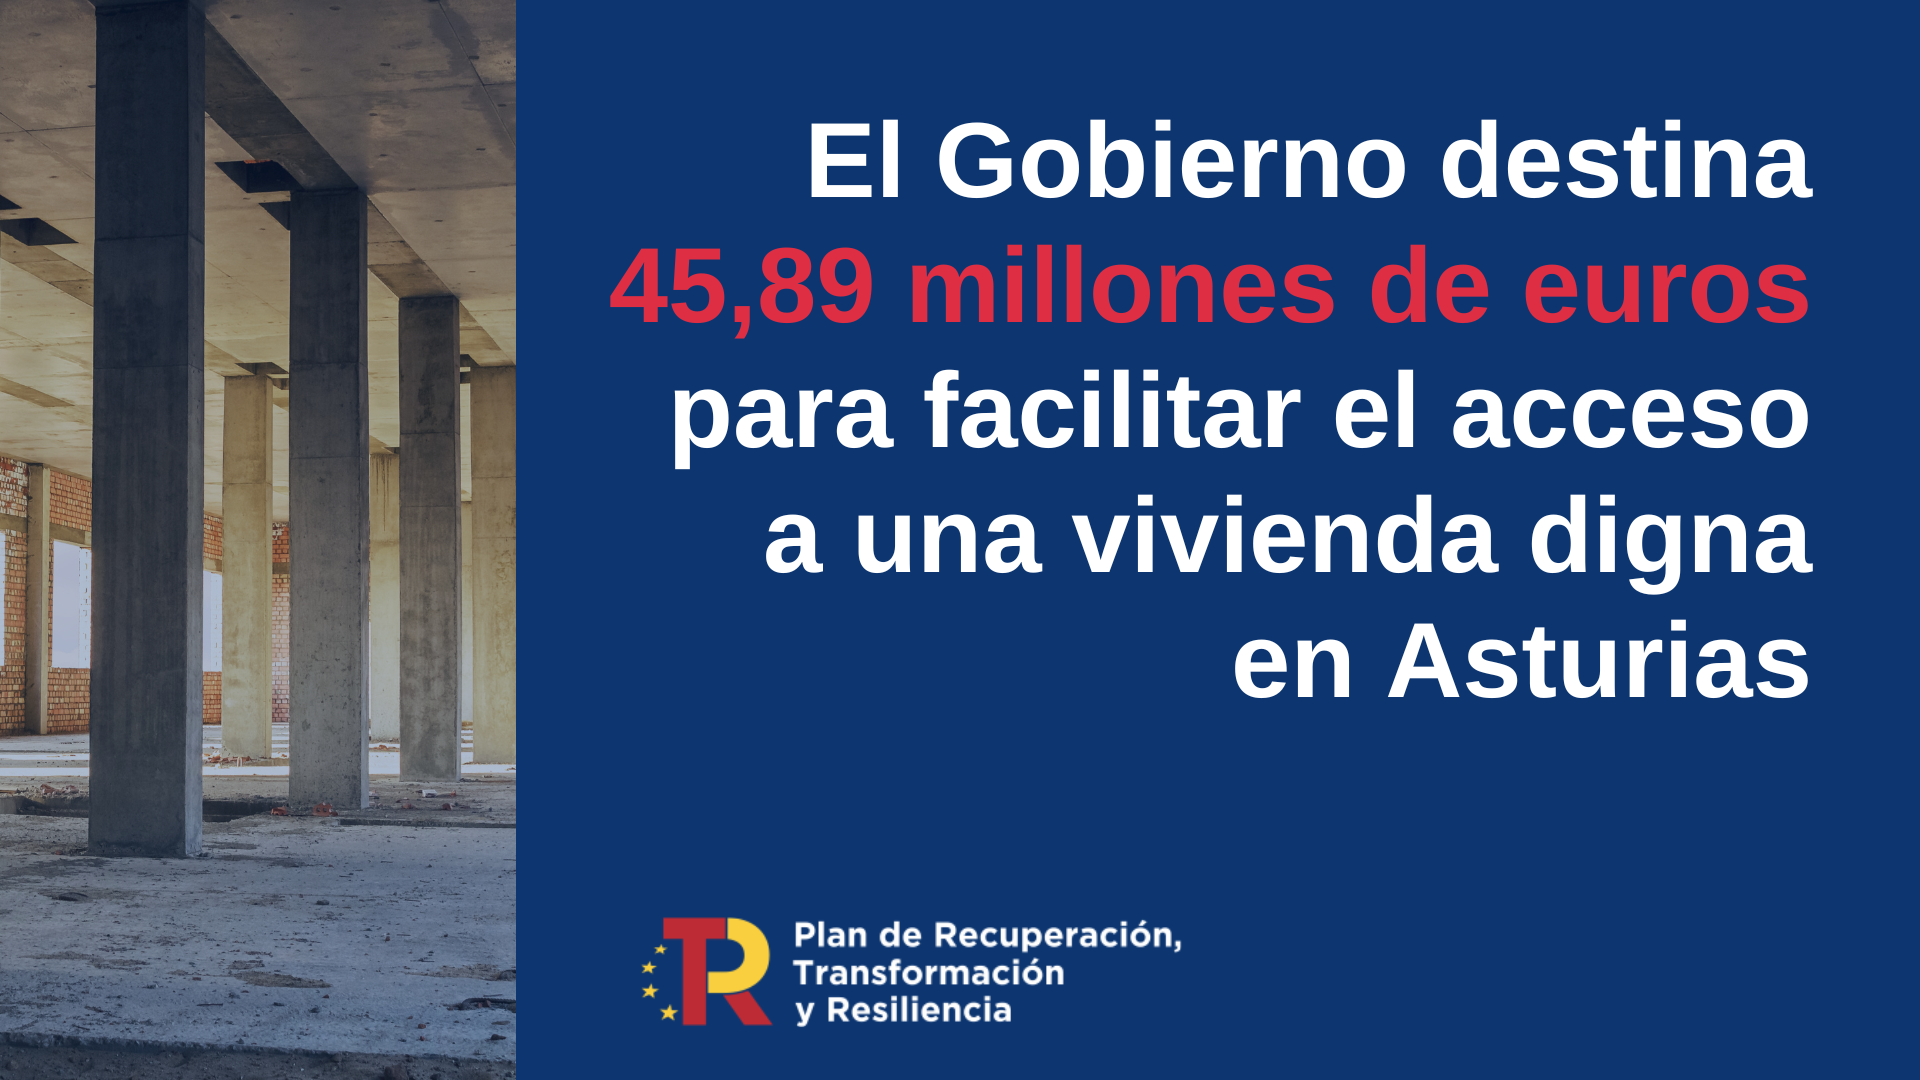 El Gobierno destina 45,89 millones de euros a Asturias para facilitar el acceso a una vivienda digna en el marco del Plan de Recuperación